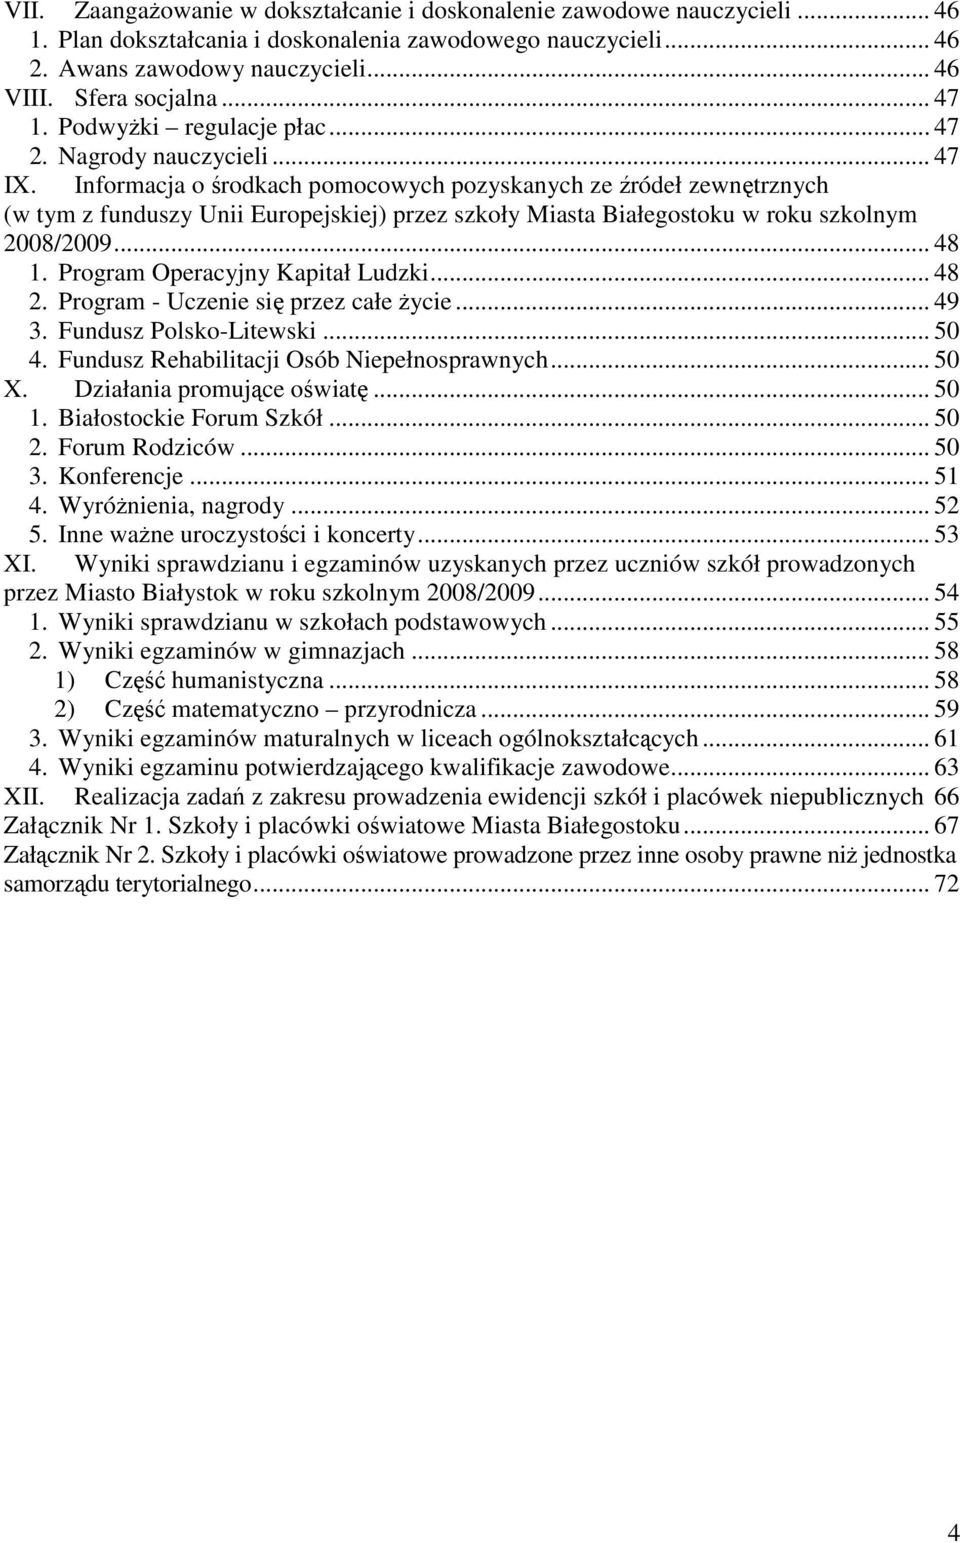 Informacja o środkach pomocowych pozyskanych ze źródeł zewnętrznych (w tym z funduszy Unii Europejskiej) przez szkoły Miasta Białegostoku w roku szkolnym 2008/2009... 48 1.